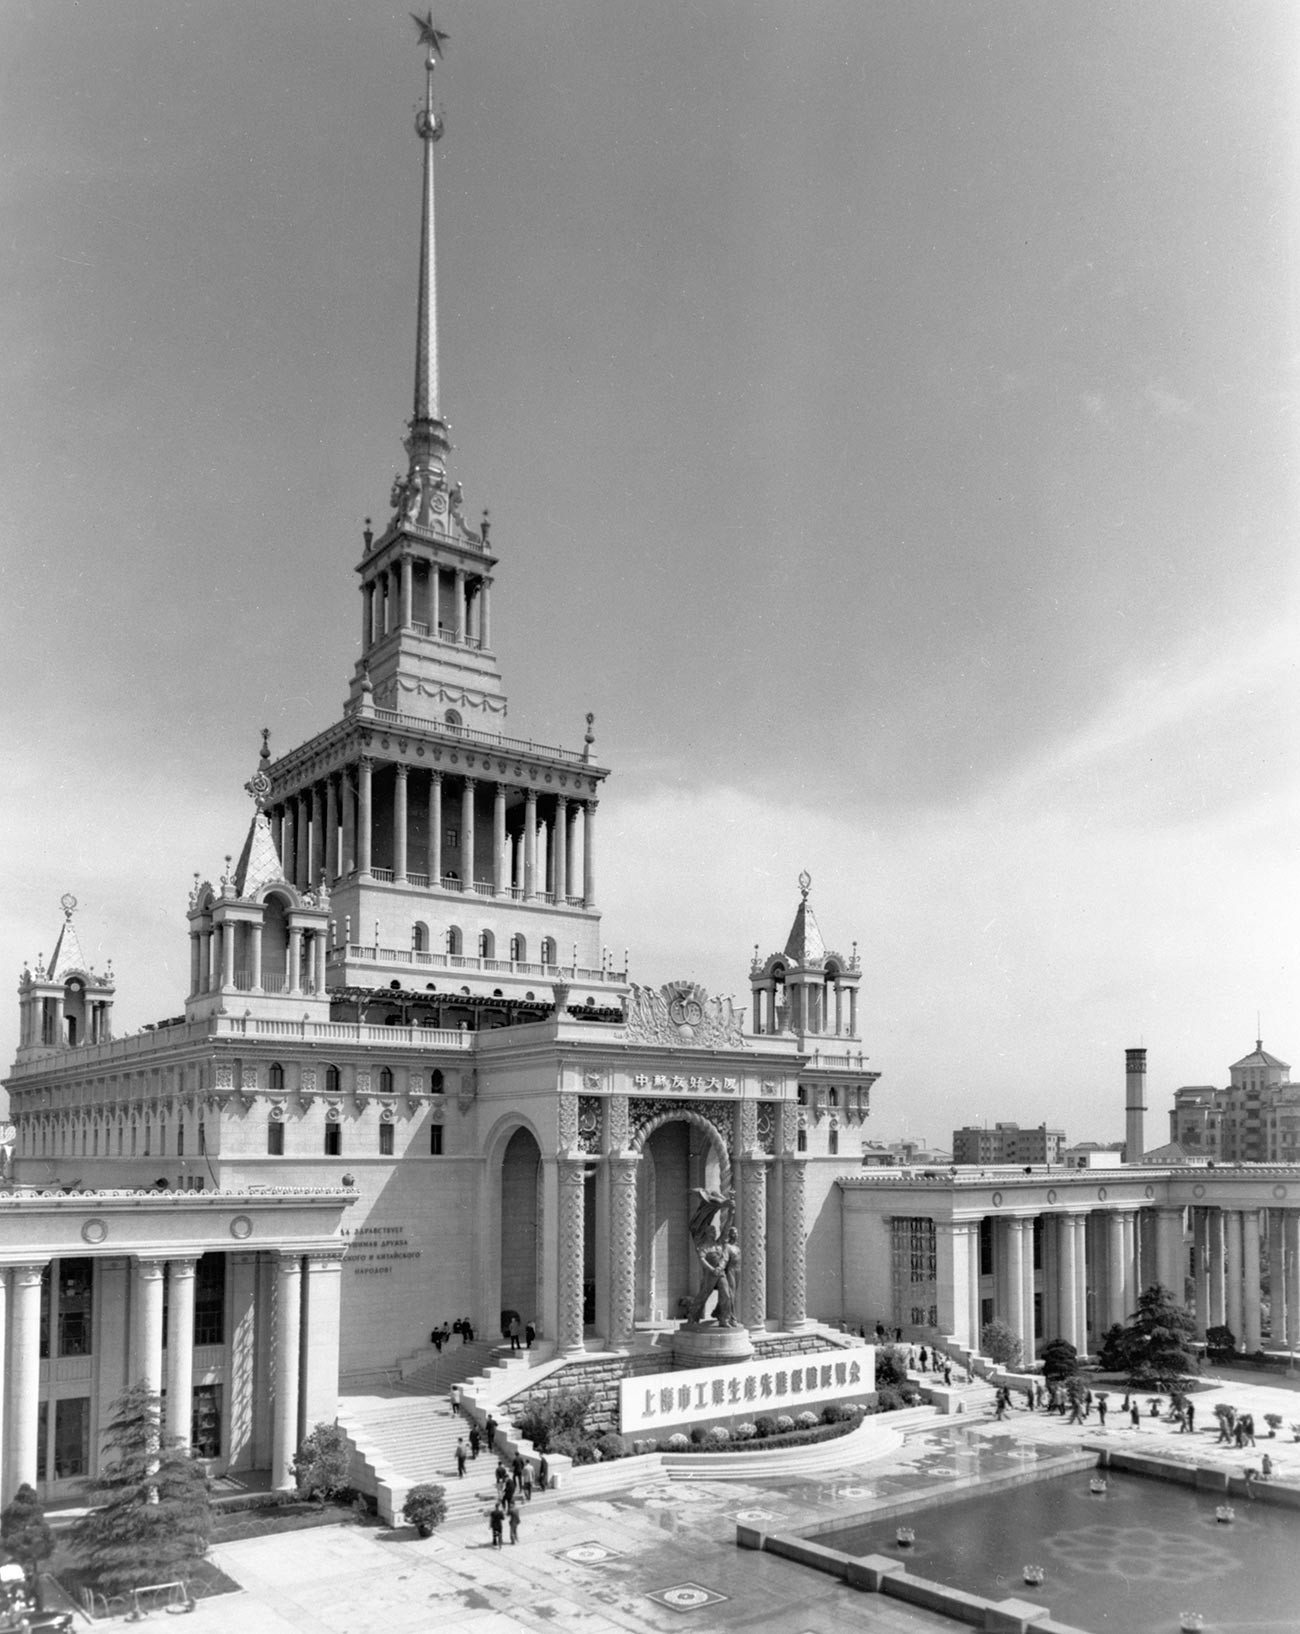 Šangaj, 2. lipnja 1956, Dom sovjetsko-kineskog prijateljstva. 
